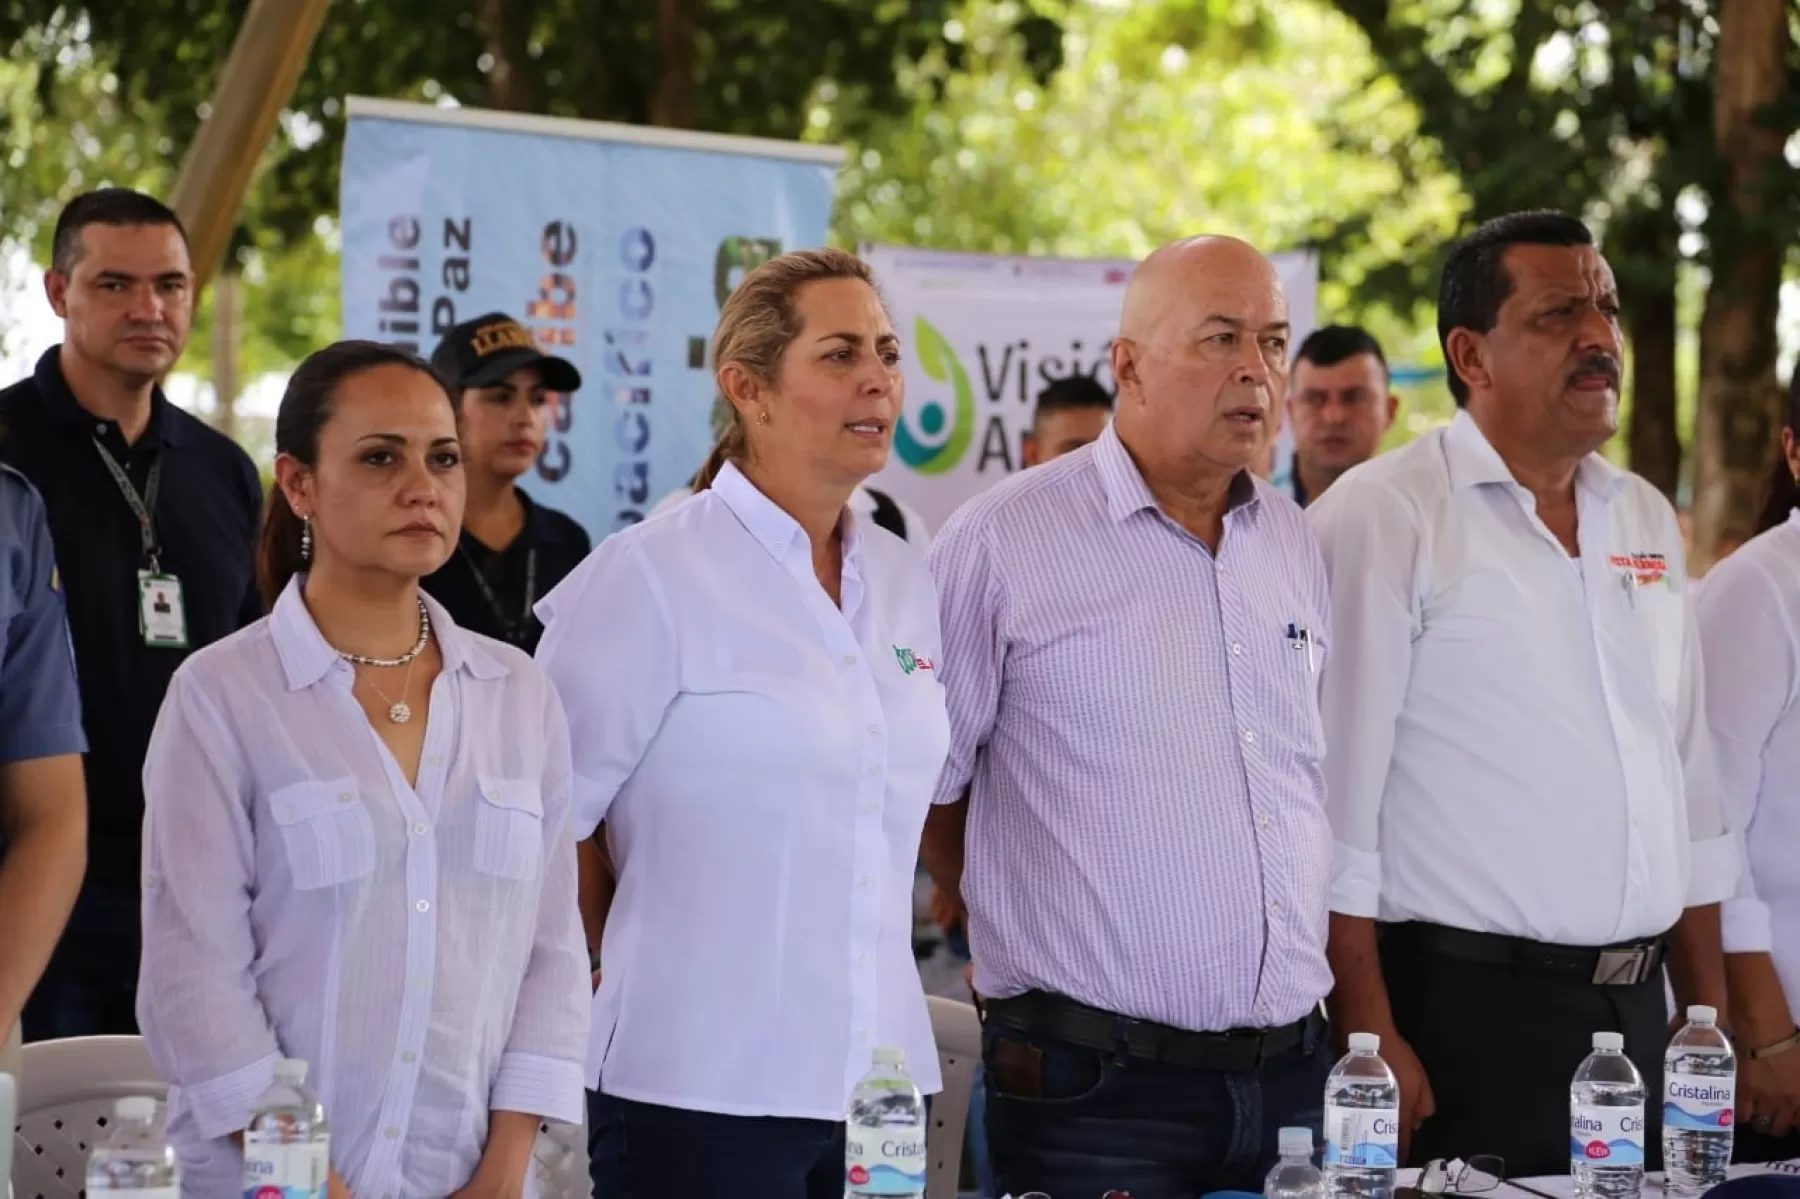 Ambiental con el objetivo de establecer un escenario de diálogo con líderes y comunidades de los departamentos de Meta, Guaviare y Caquetá, sobre las conflictividades socioambientales actuales de la región.